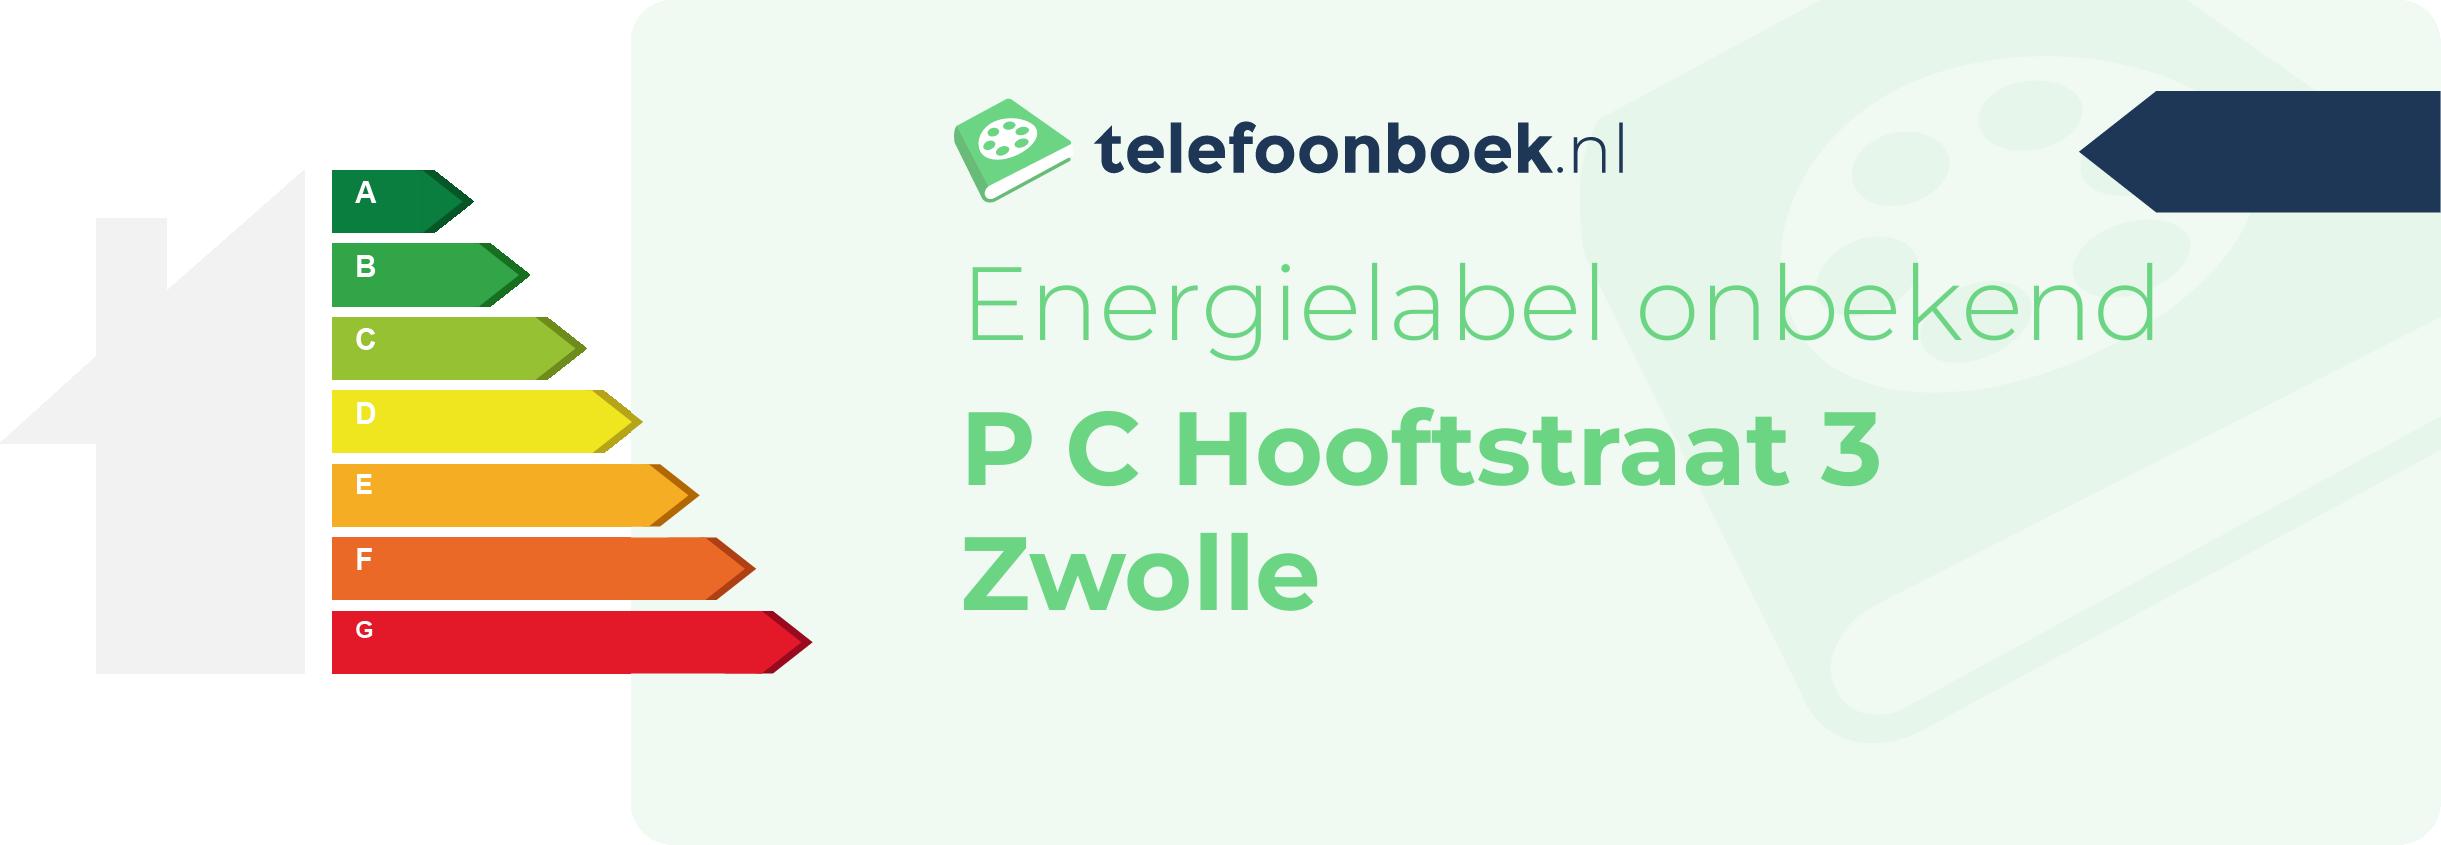 Energielabel P C Hooftstraat 3 Zwolle